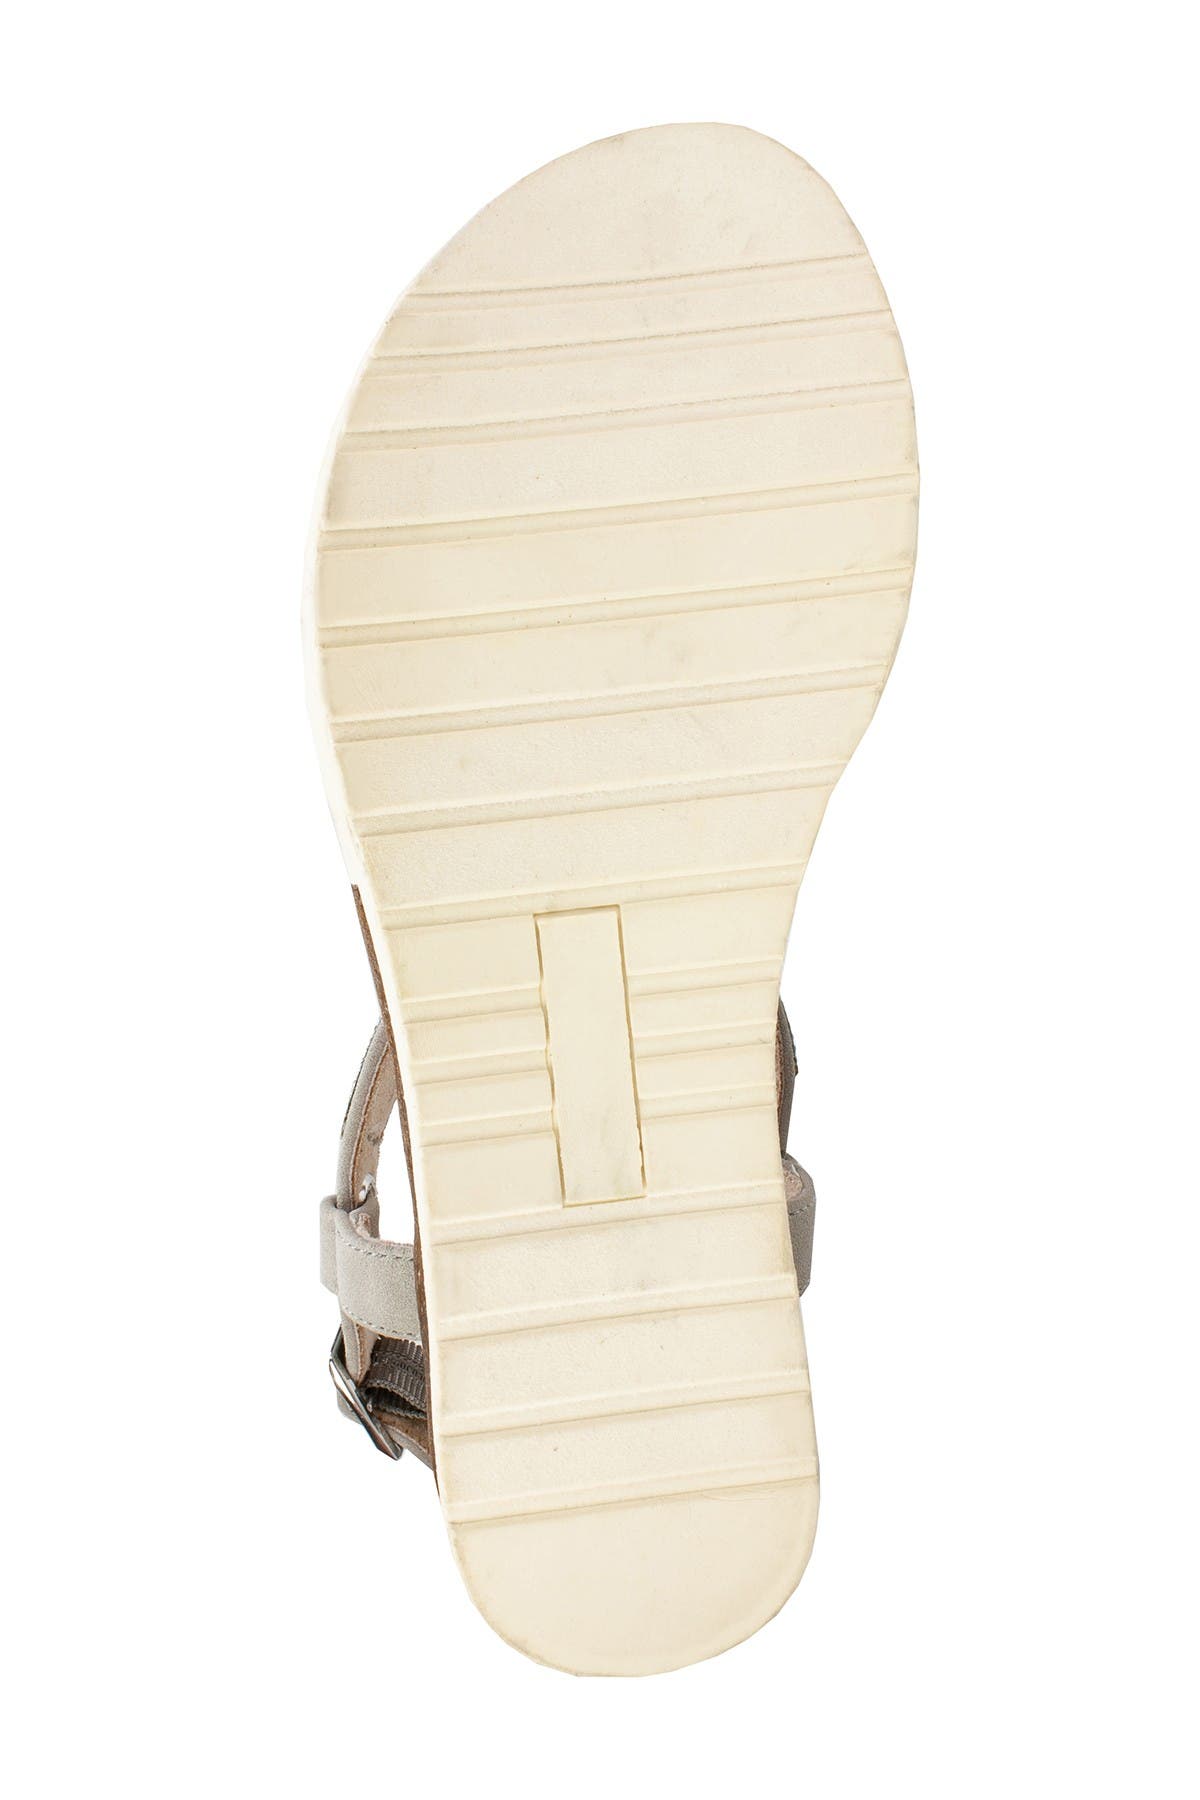 white mountain parana sandal